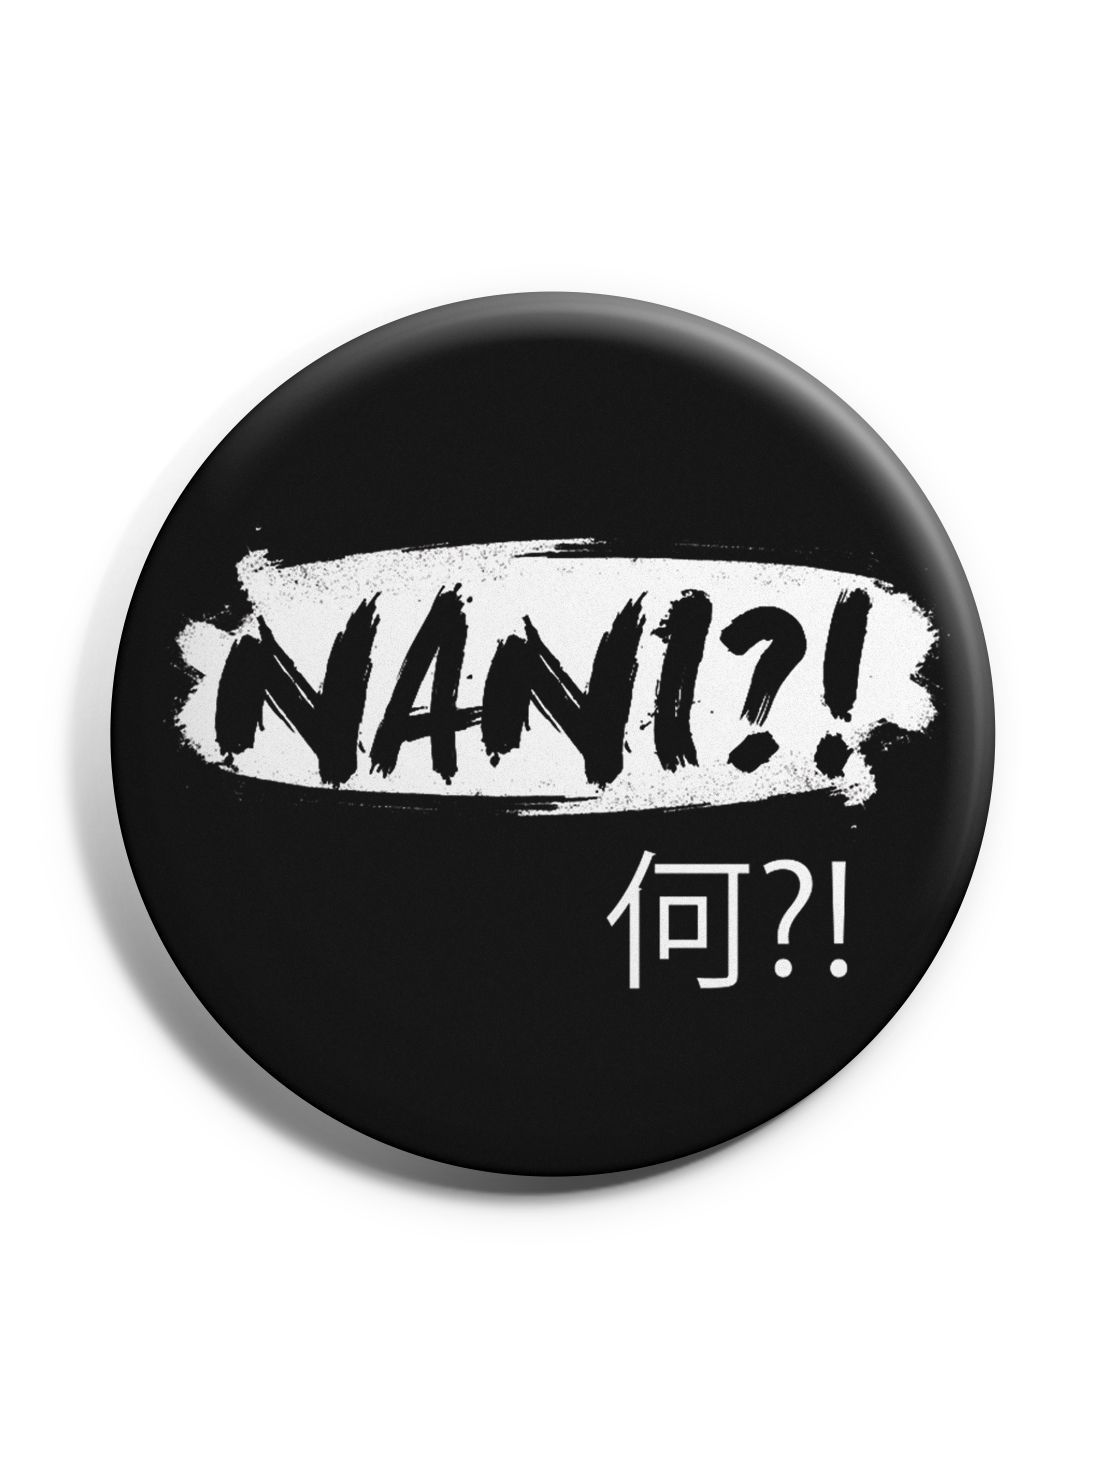 Nani ?! Badge Anime Badges by ComicSense